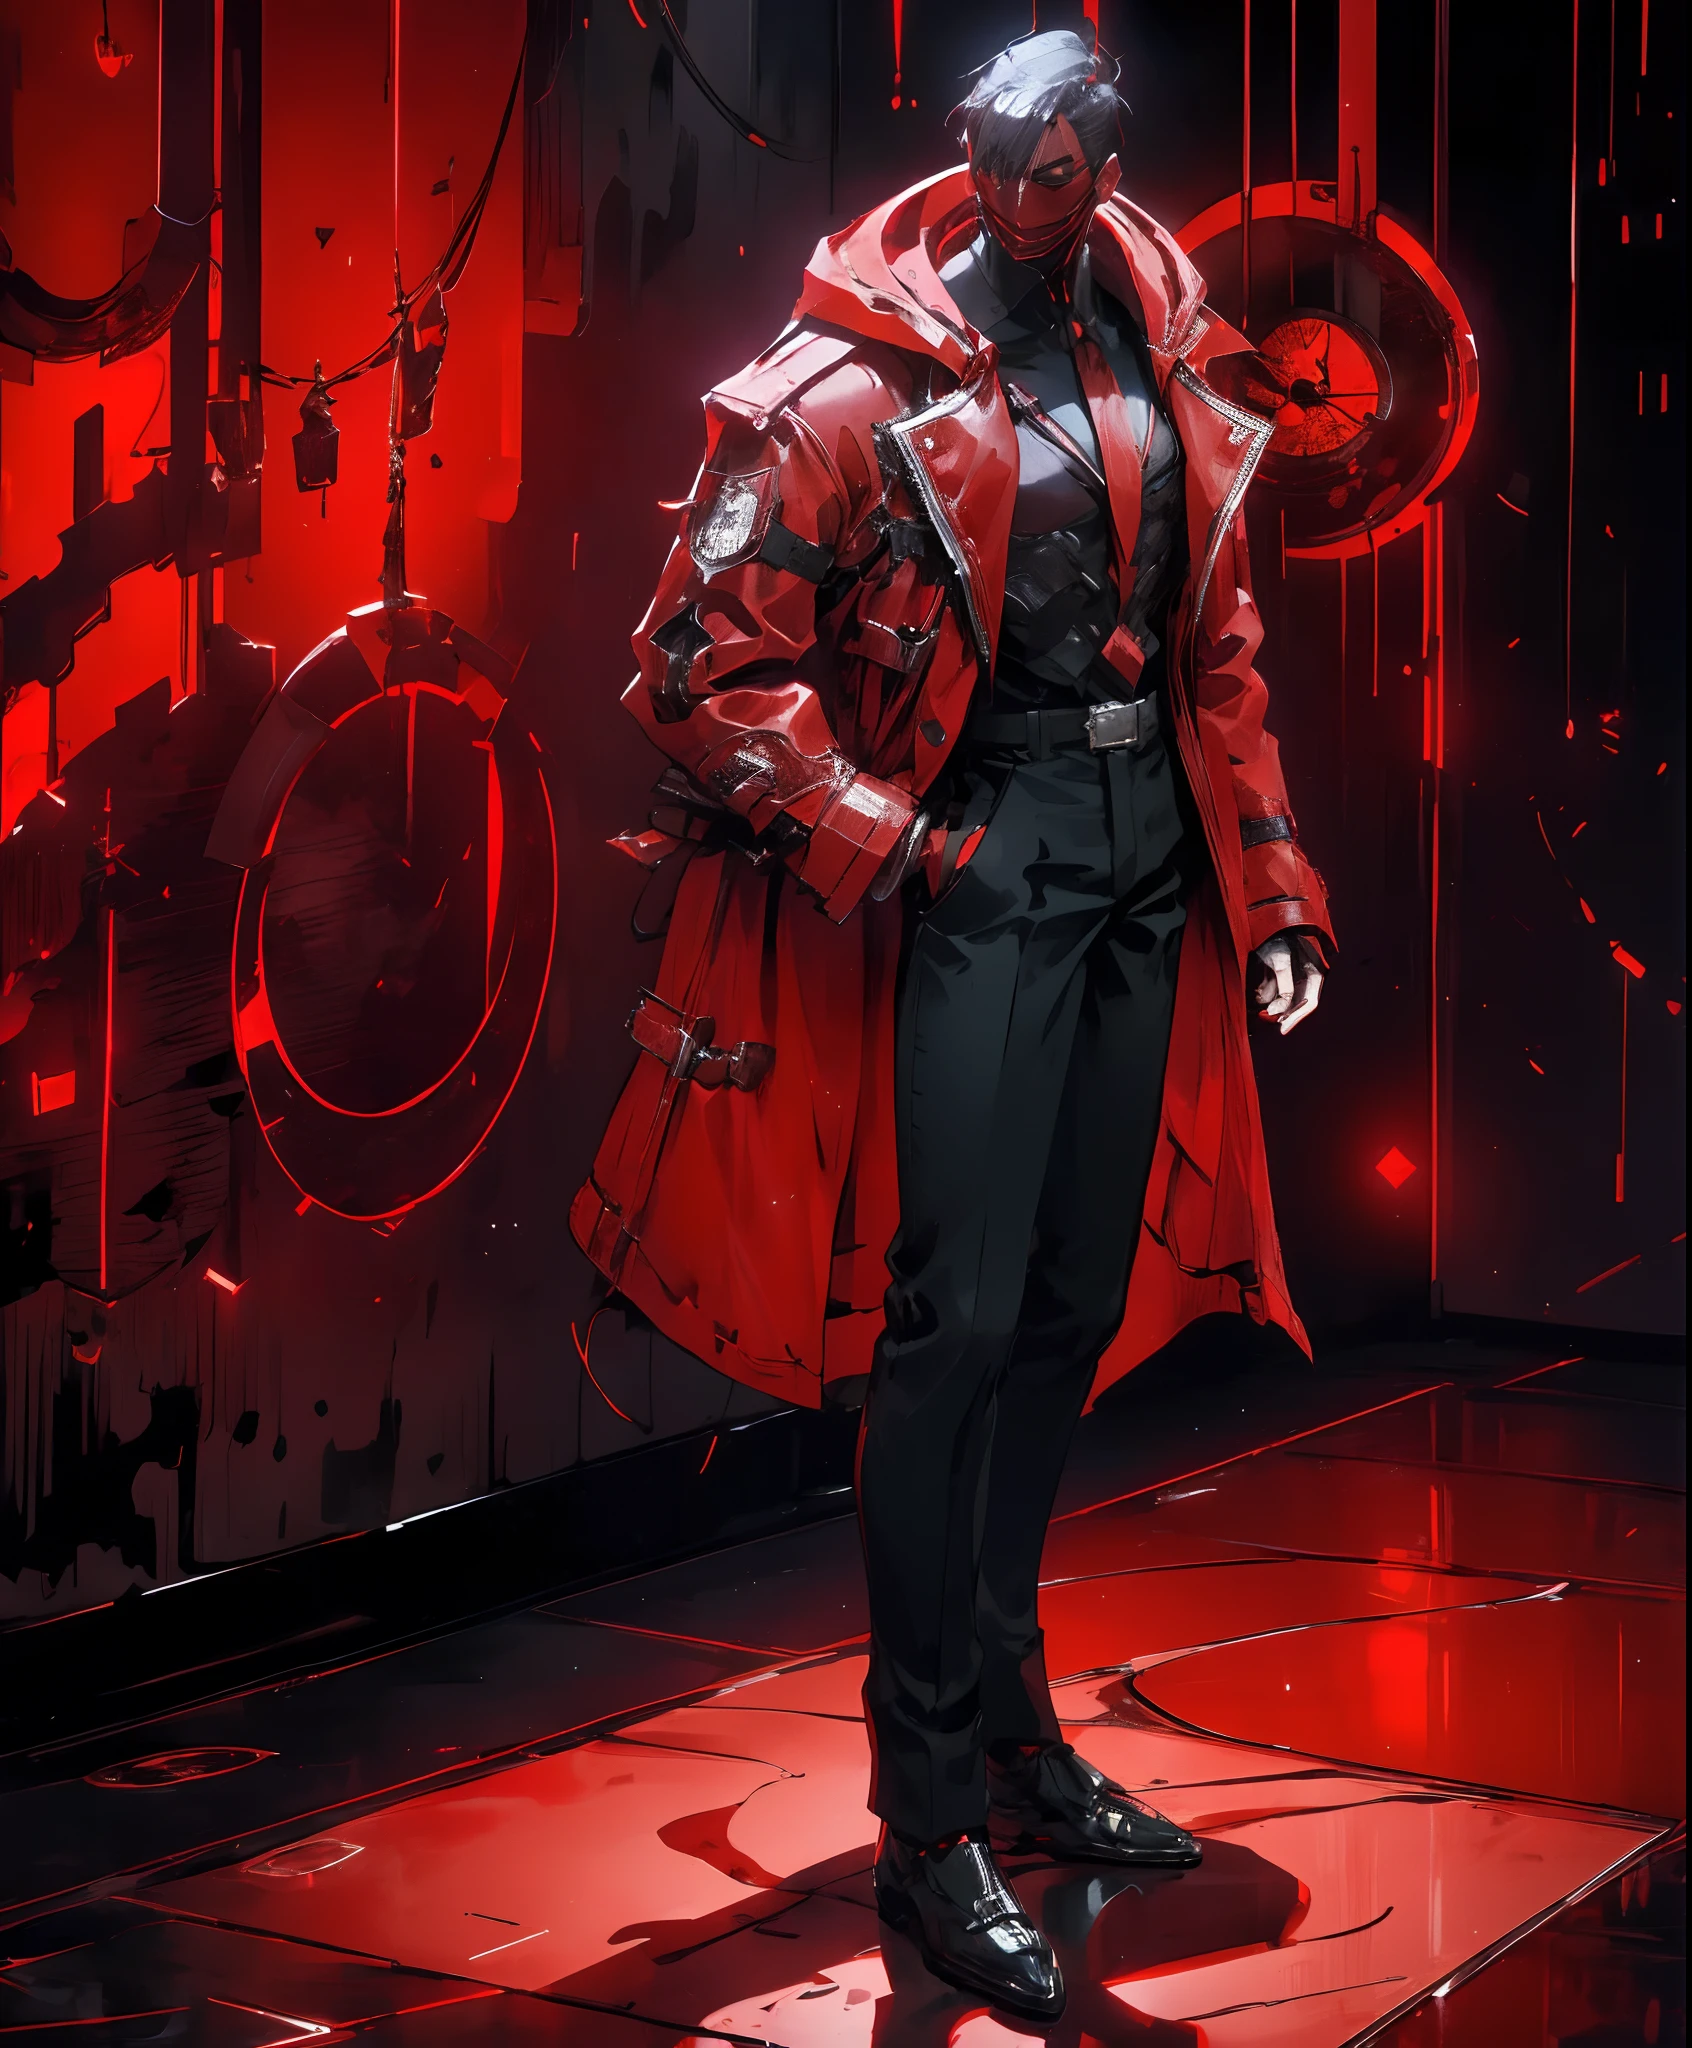 Ein Mann in einer roten Jacke und schwarzen Hosen steht in einem dunklen Raum, trägt die rote Robe eines Kultisten, purpurrote Kleidung, Charakter aus Mortal Kombat, als Charakter in Tekken, Kampfspielcharakter, cyberpunk assassin, Magier mit roter Kapuze, cyberpunk outfits, purpurrote Kleidung, der rote Ninja, trägt eine Assassinenrüstung aus Leder, ein nervöser jugendlicher Mörder, coole rote jacke, cyberpunk street goon